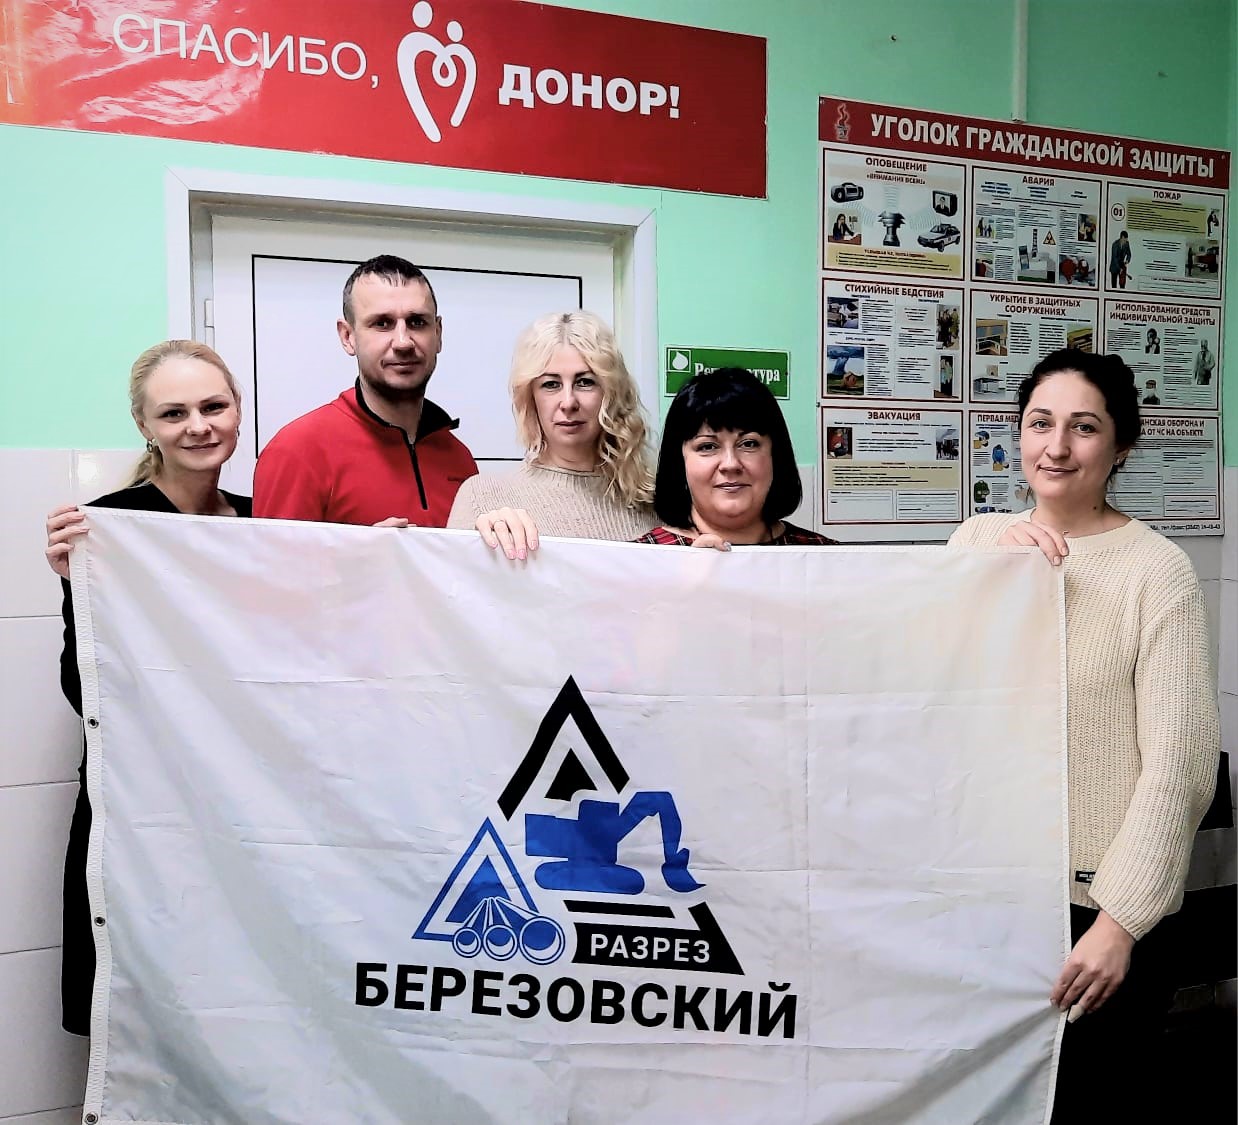 9 литров крови сдали сотрудники разреза Березовский для кузбасских больниц. Стройсервис